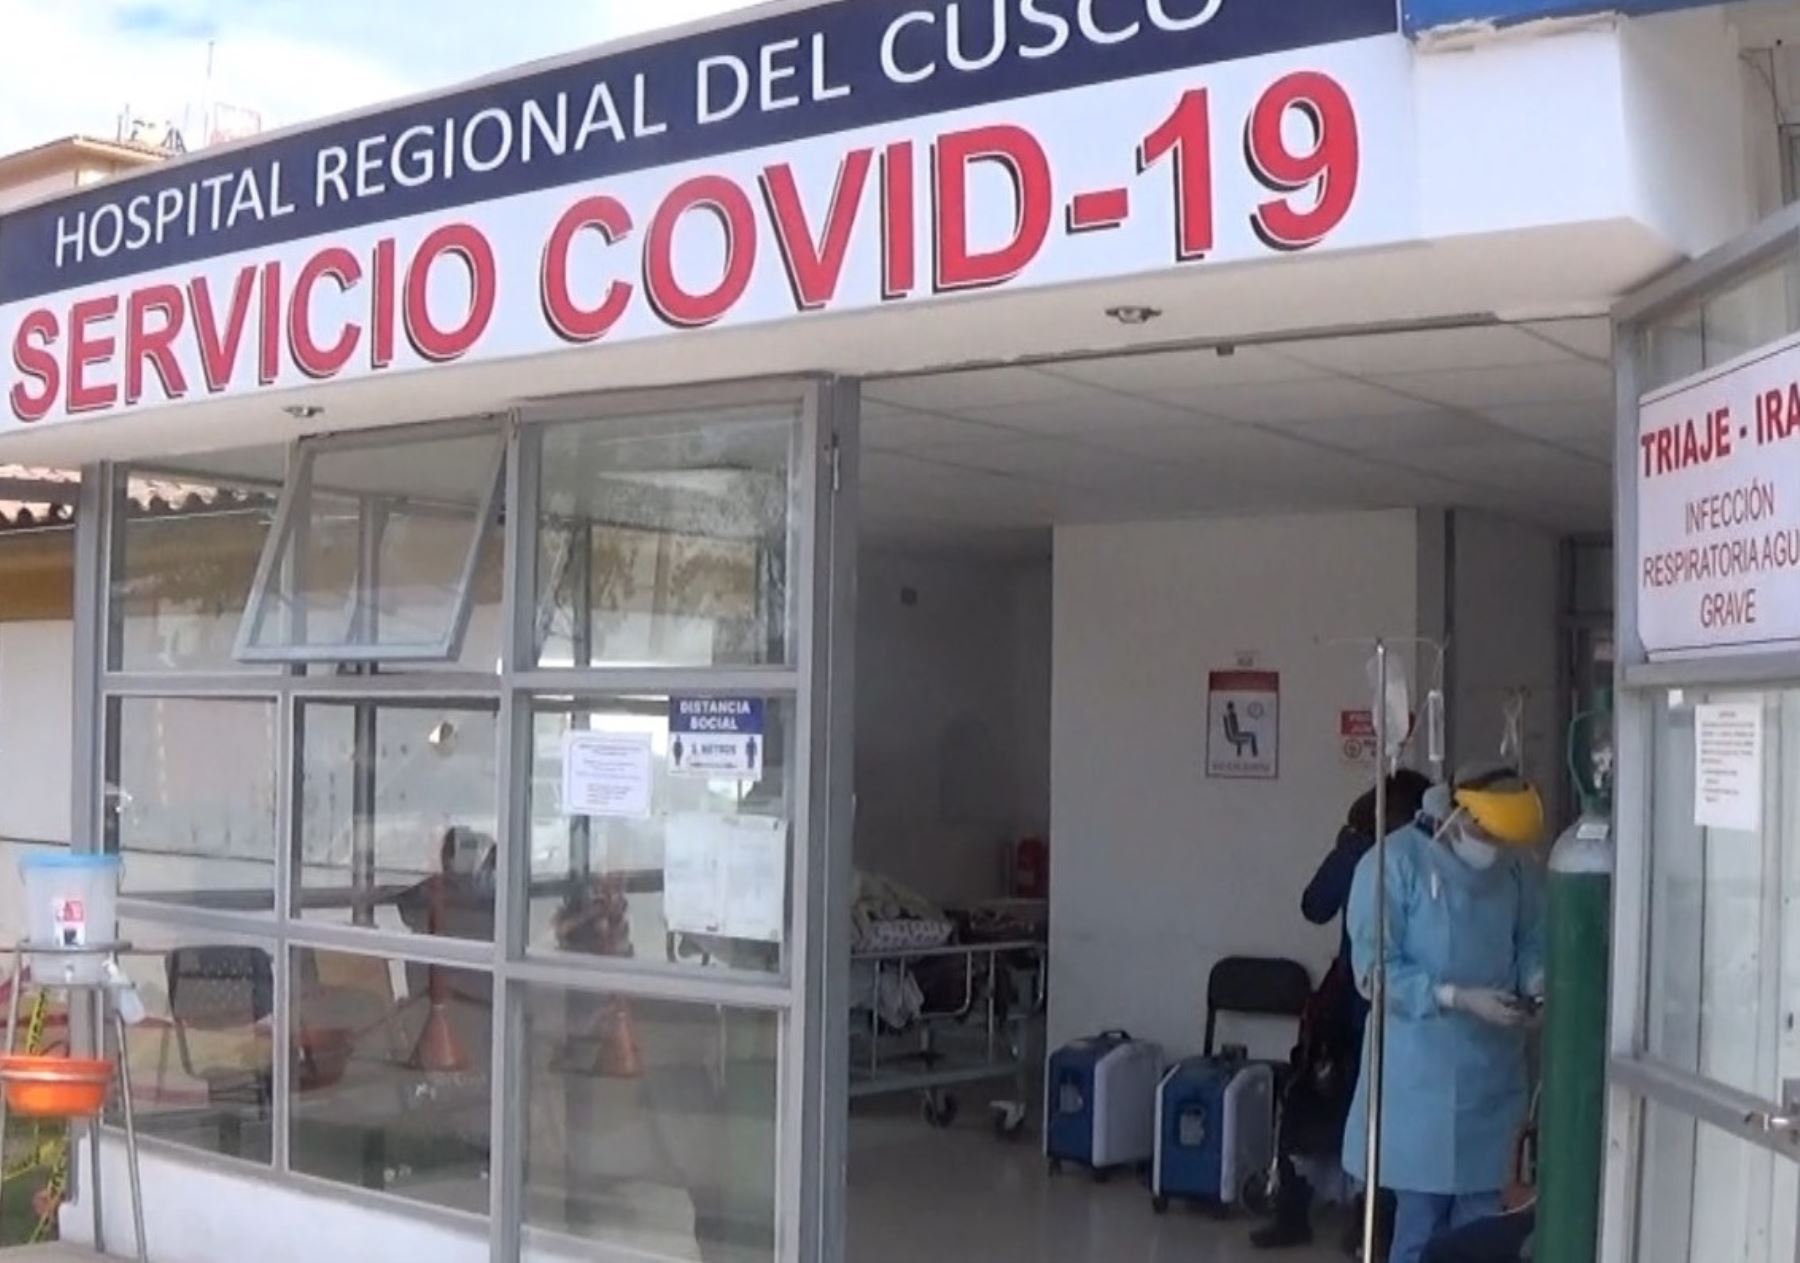 El Hospital Regional de Cusco reporta un descenso en el número de fallecidos y de contagiados por coronavirus (covid-19). Tendencia se mantiene desde comienzos de esta semana. ANDINA/Difusión